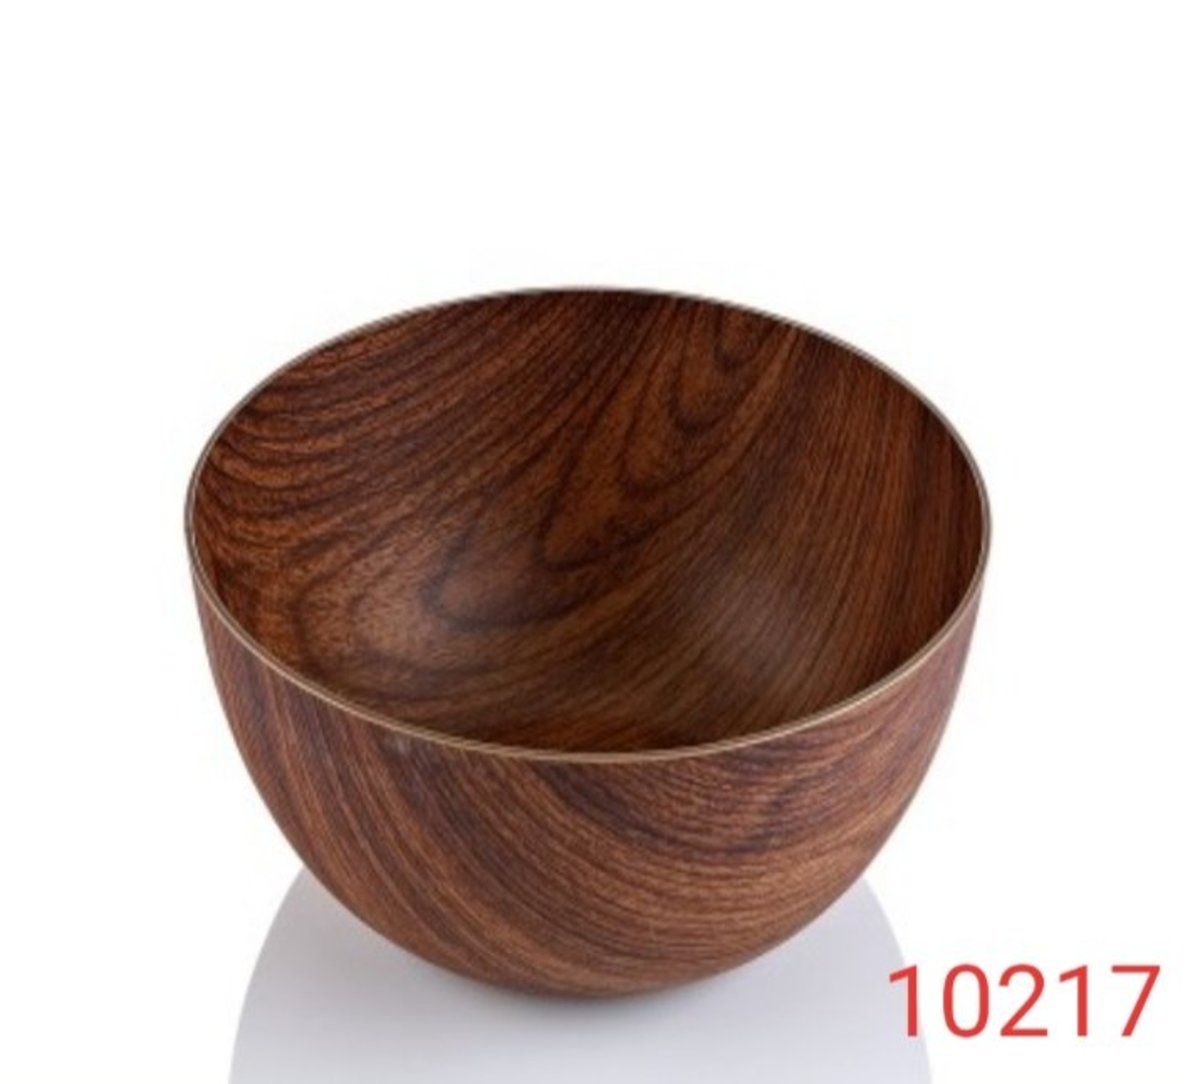 Evelin 木紋圓形碗 PS物料生產, 衛生耐用易清洗   29.5x11.5cm 土耳其 (10217M)